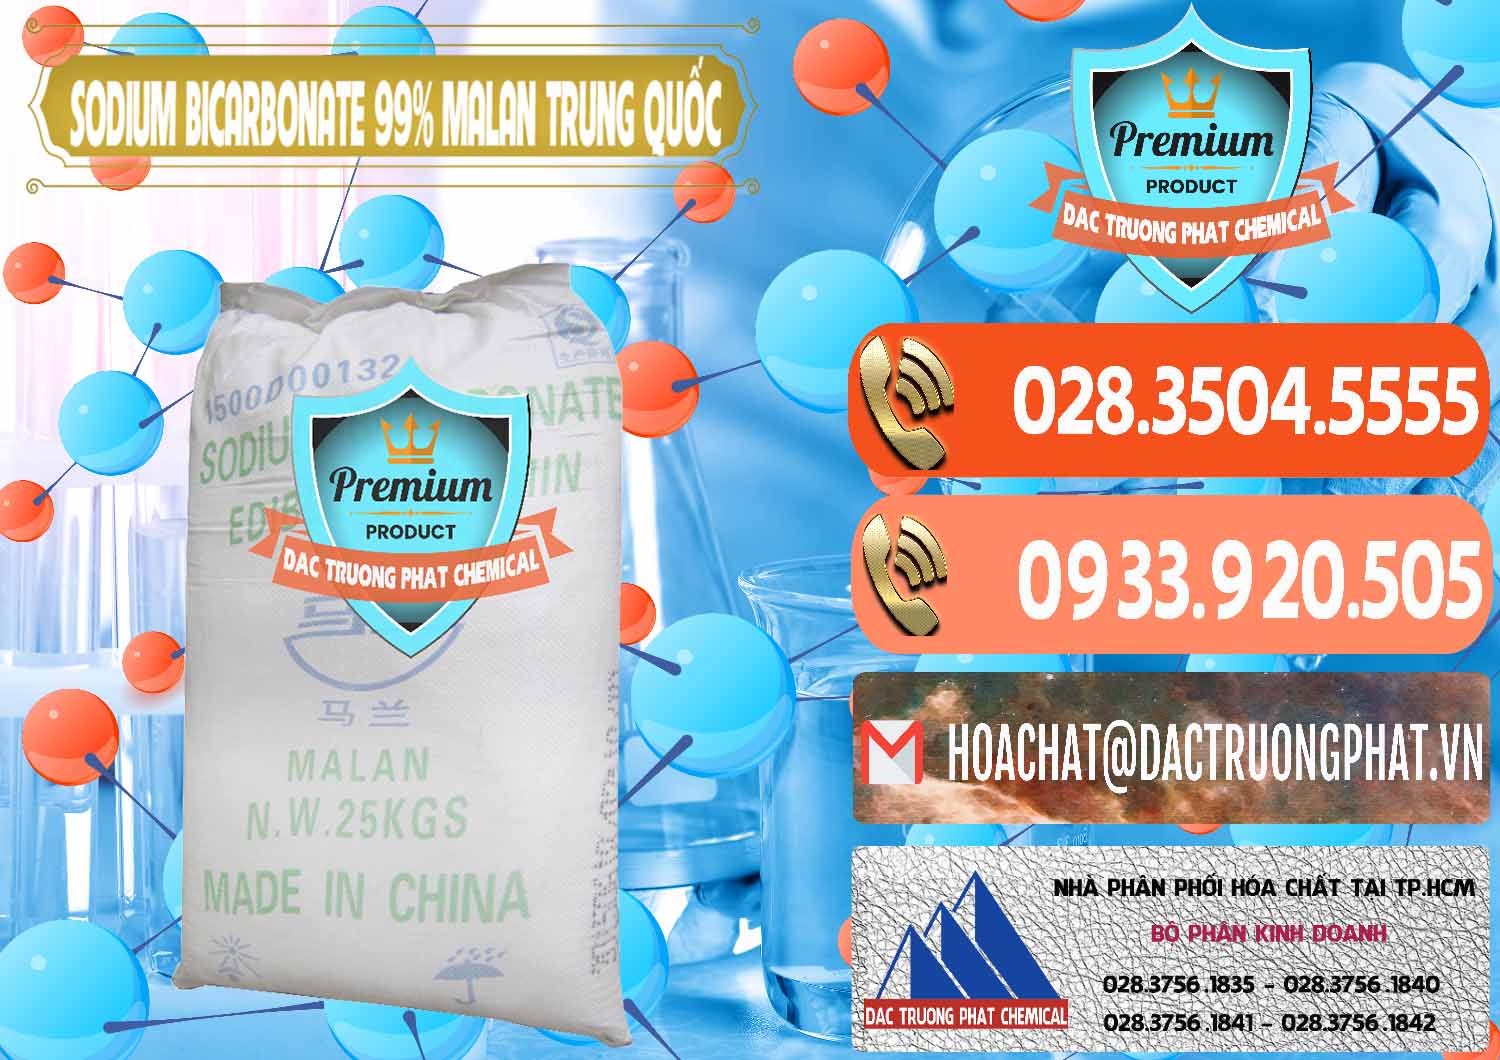 Cty chuyên nhập khẩu ( bán ) Sodium Bicarbonate – Bicar NaHCO3 Malan Trung Quốc China - 0218 - Chuyên kinh doanh & phân phối hóa chất tại TP.HCM - hoachatmientay.com